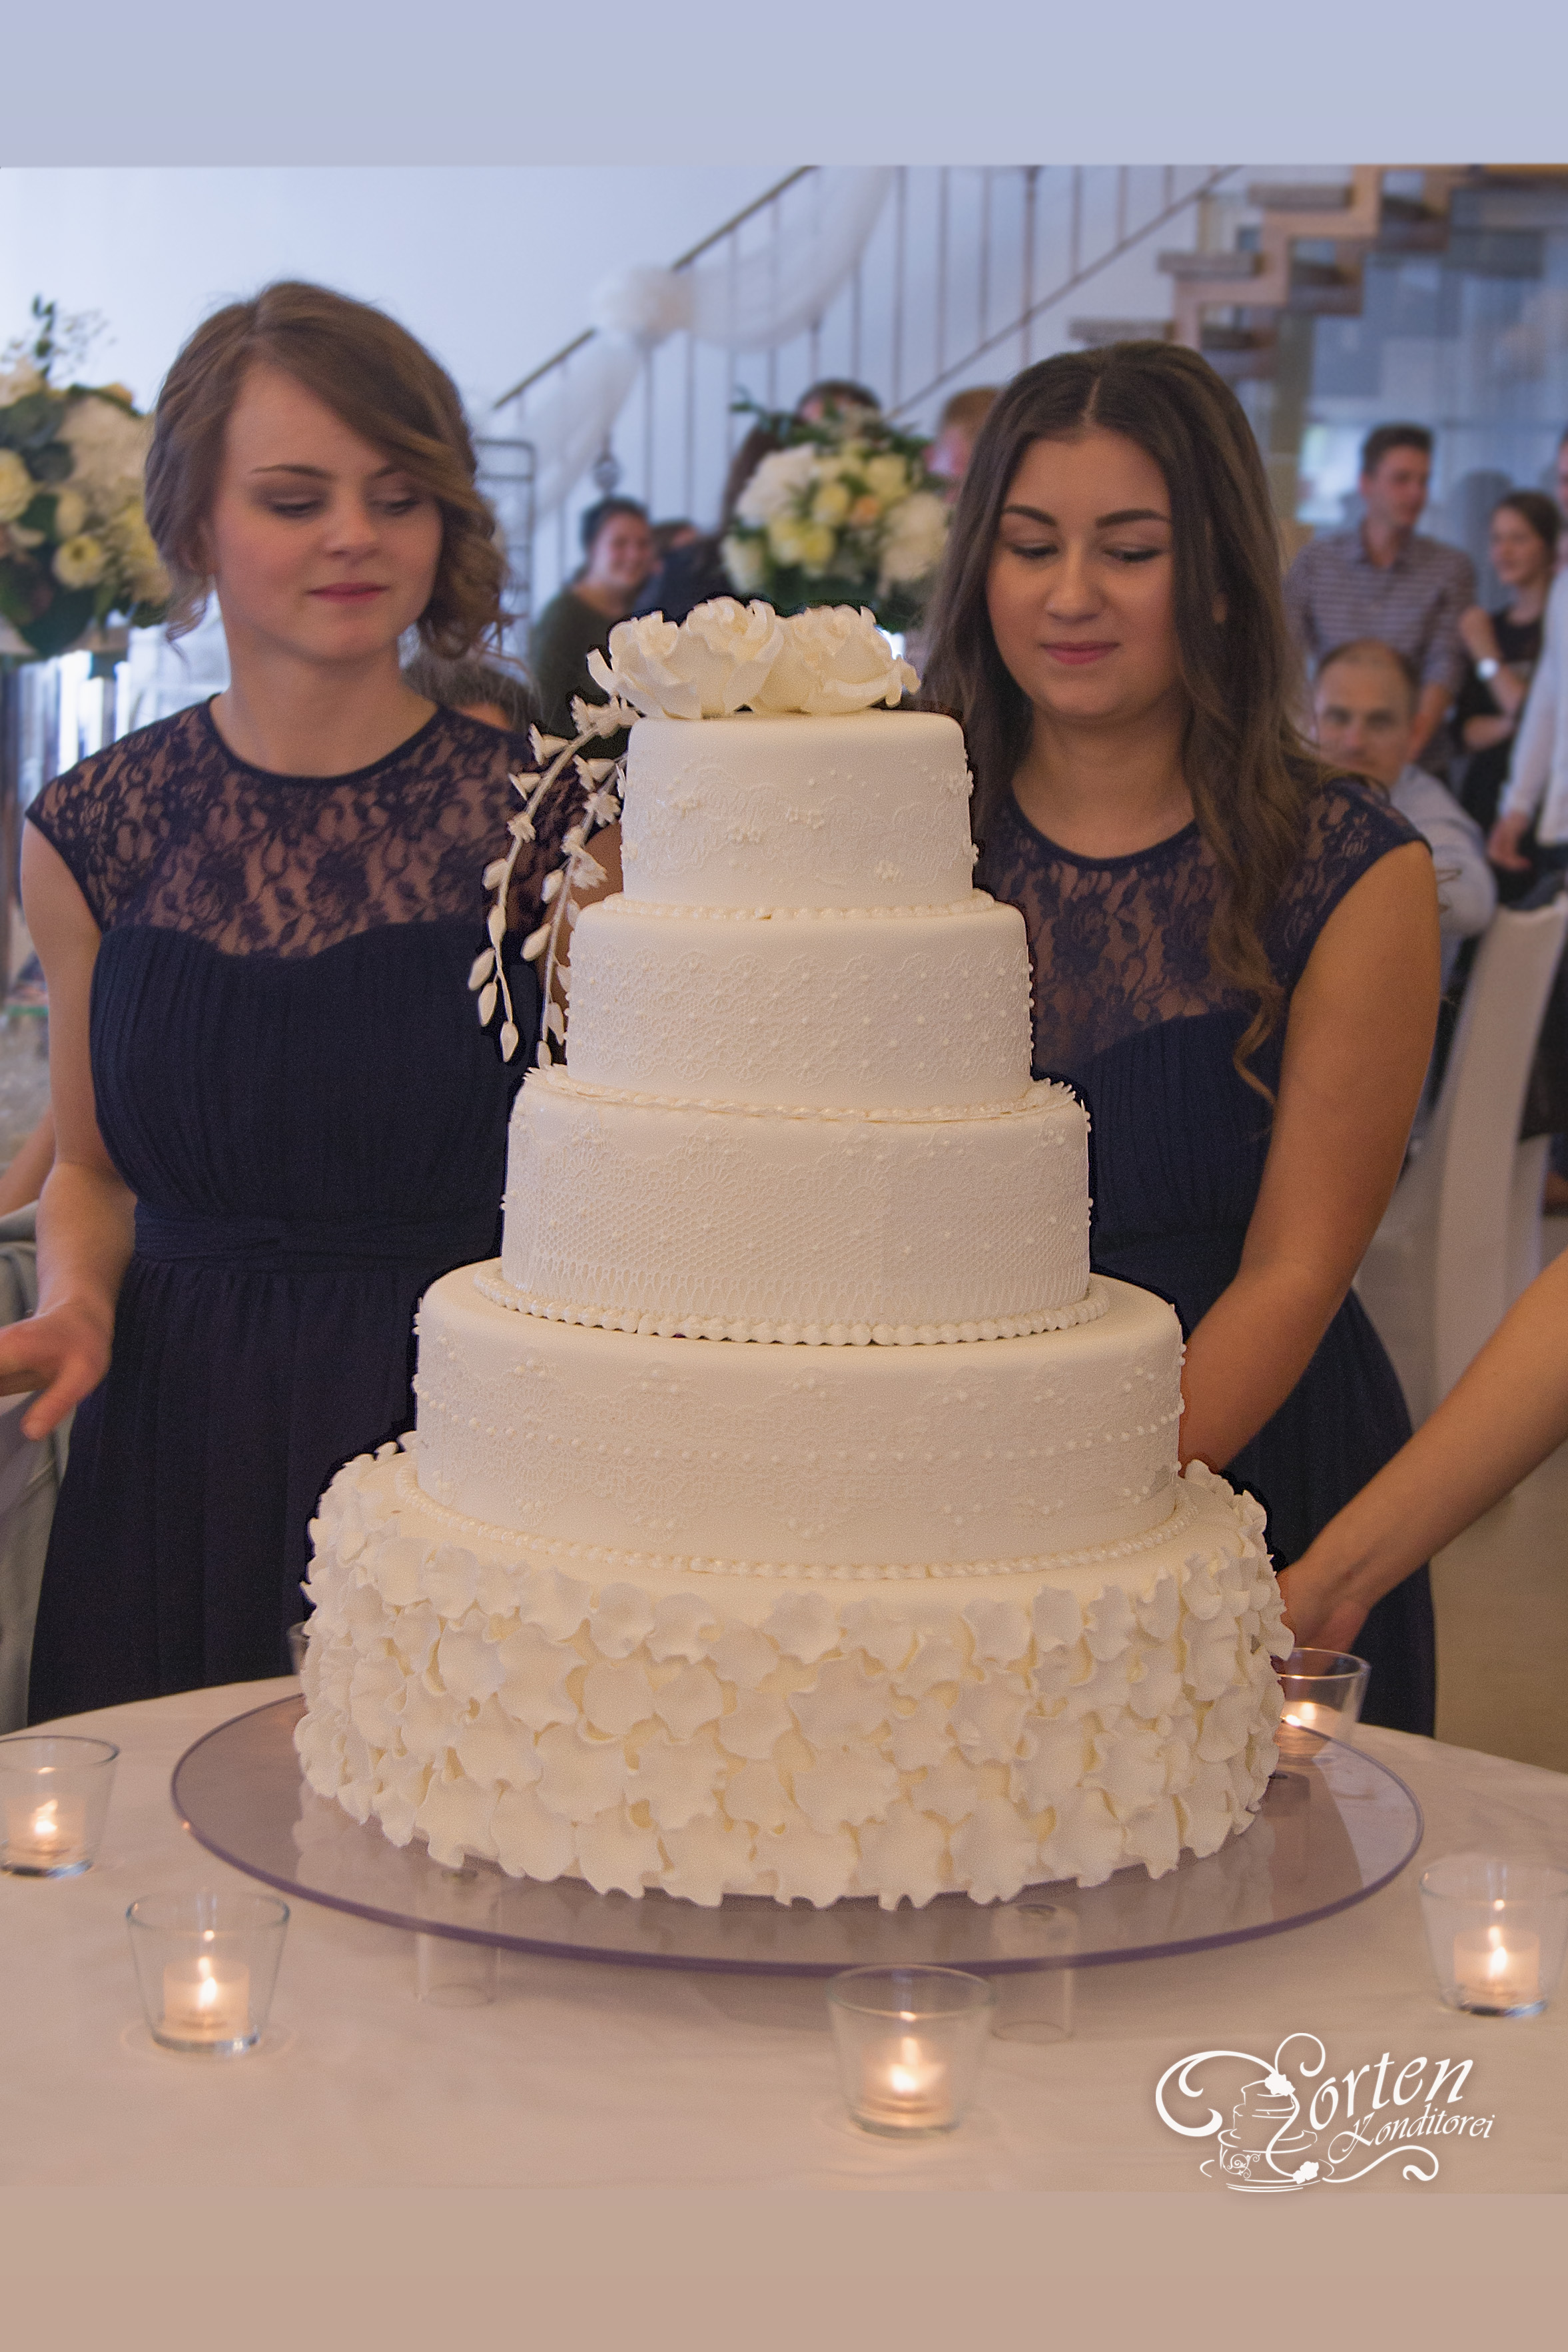 Elegante Hochzeitstorte mit Zucker-Spitze in weiß.